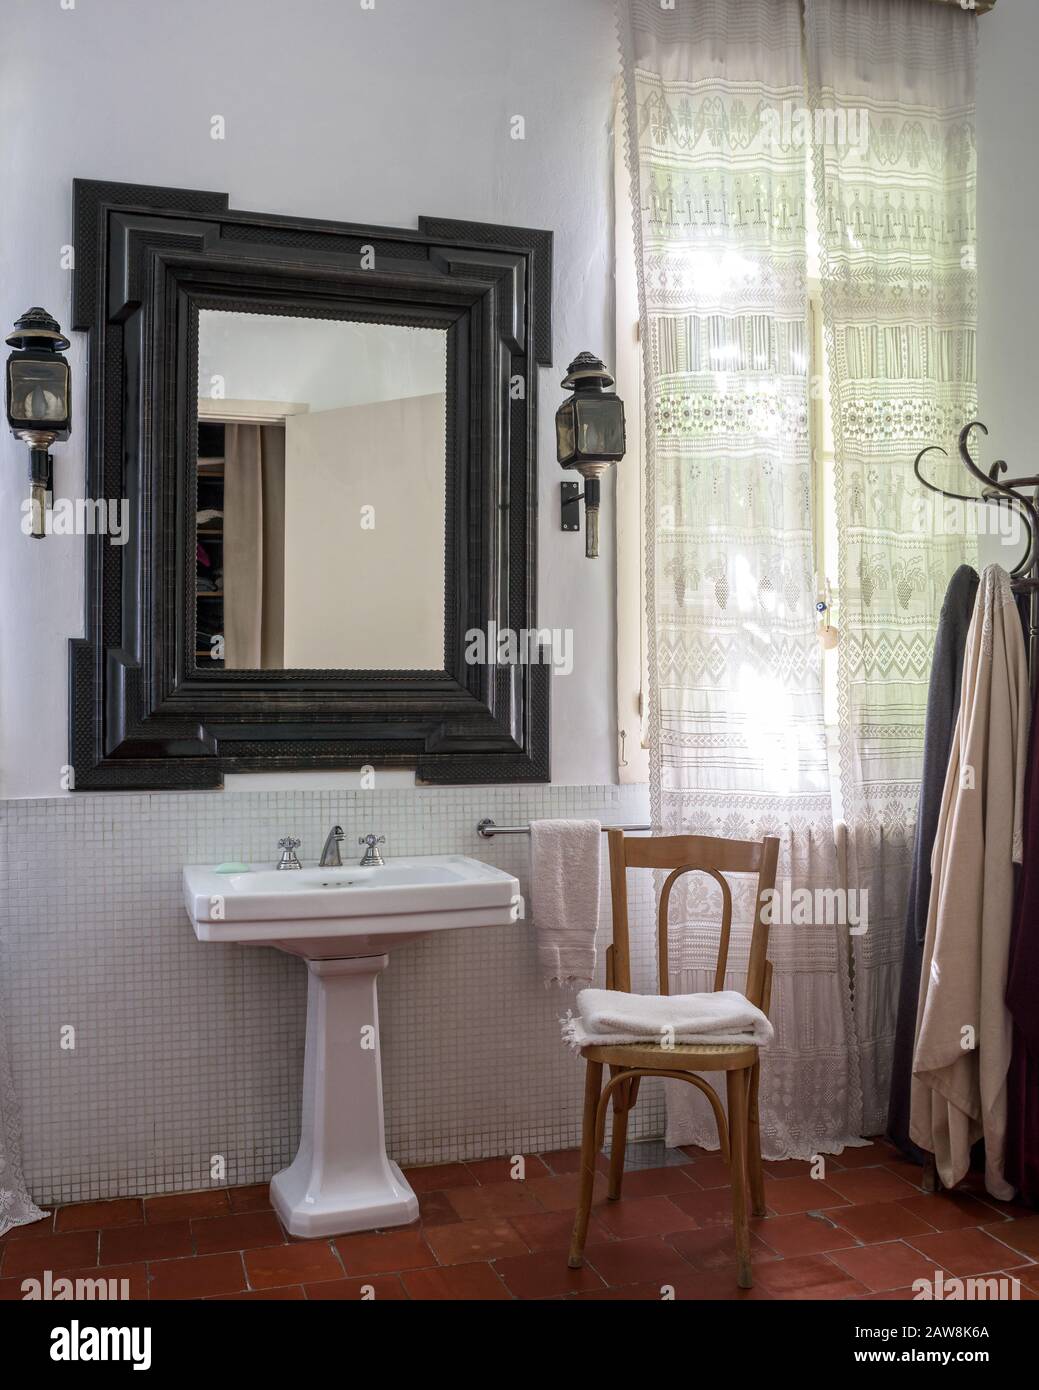 Lavabo con espejo estilo country en el baño Foto de stock